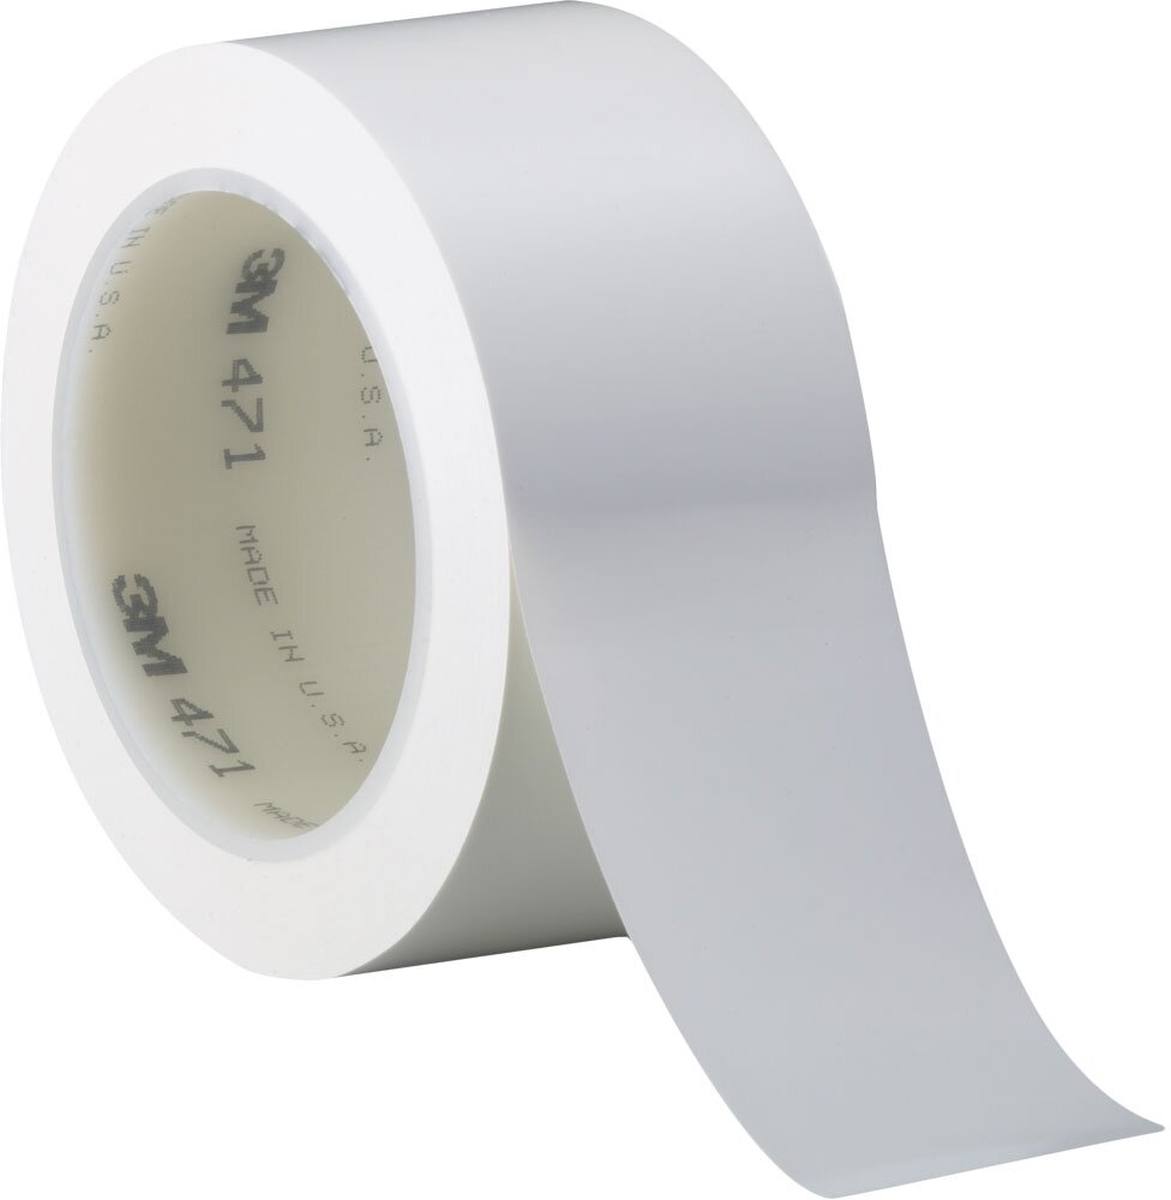 Nastro adesivo 3M in PVC morbido 471 F, bianco, 12 mm x 33 m, 0,13 mm